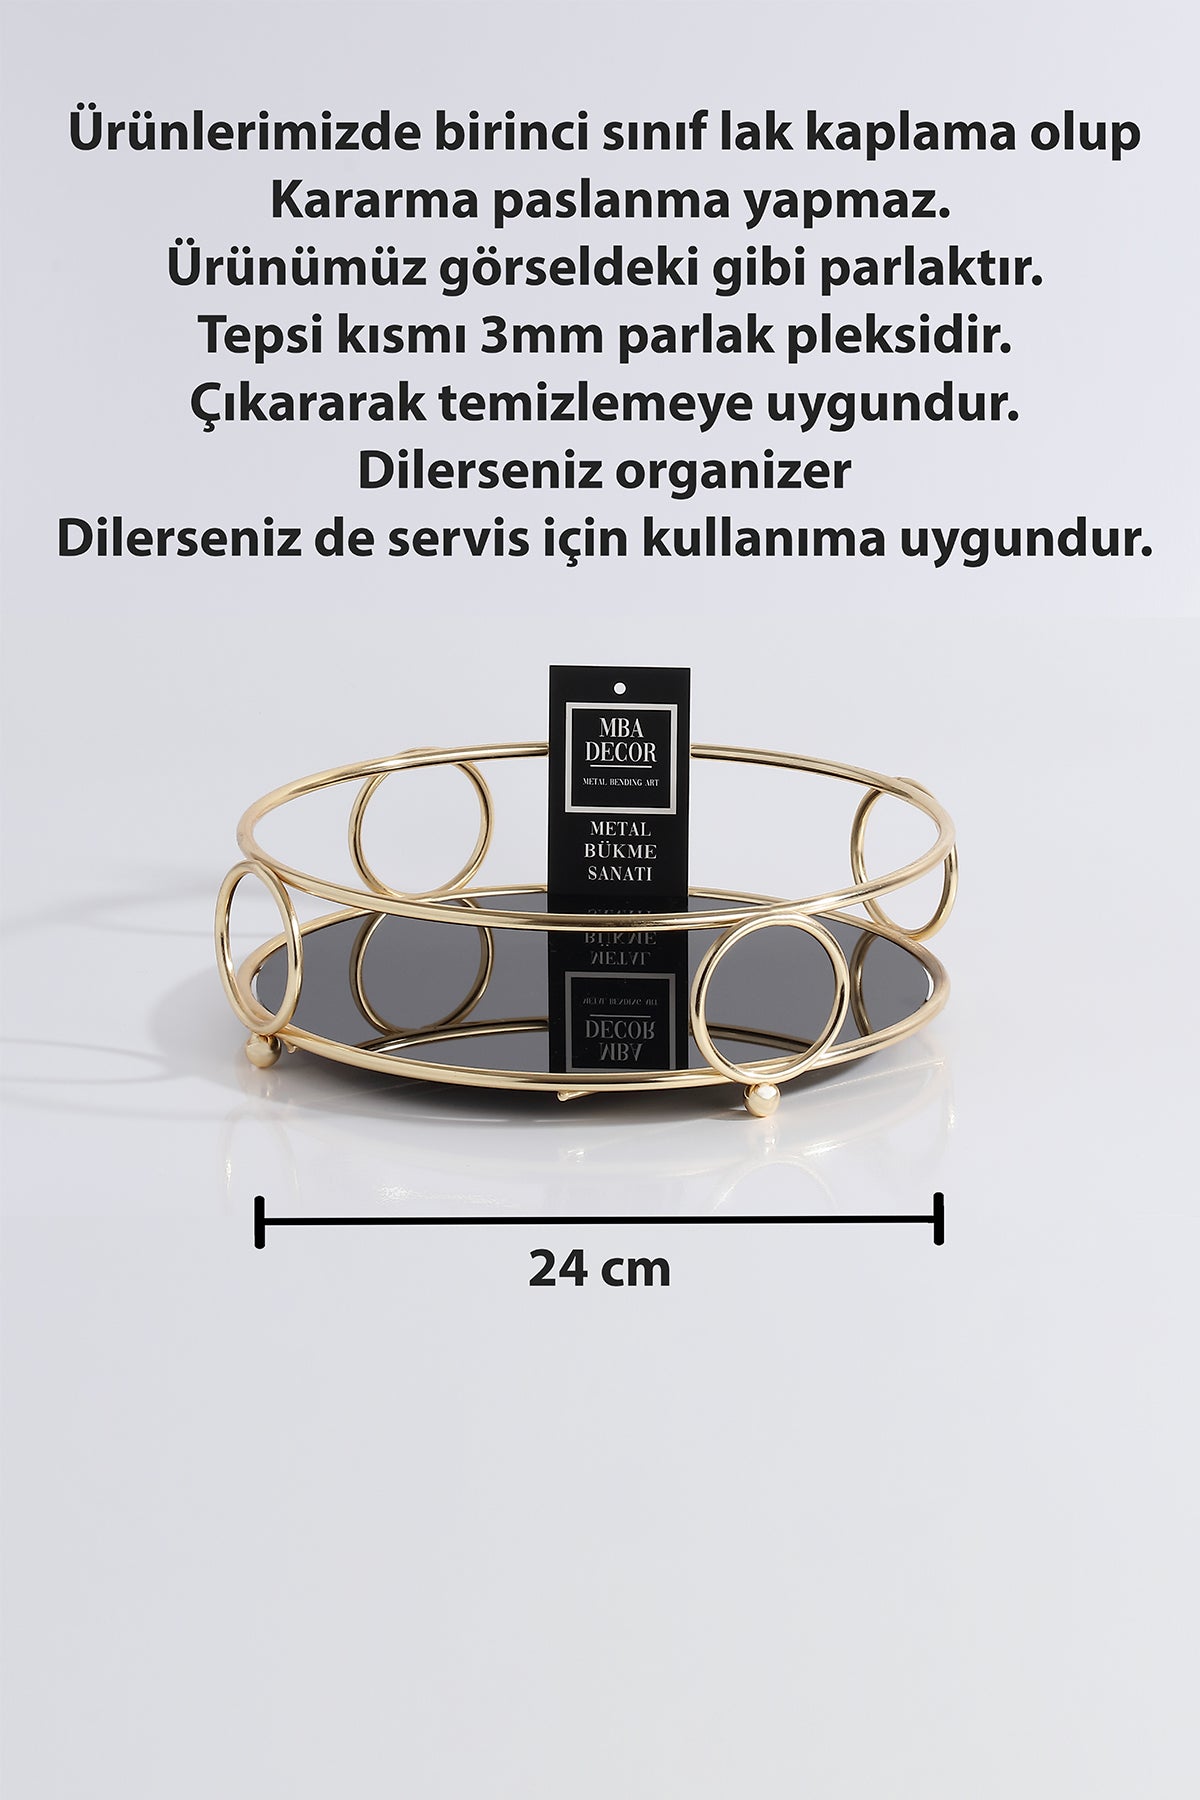 Yuvarlak Gold Servis Sunum Tepsisi İkramlık Hediyelik Dekorasyon Organizer 24cm ALYANS Sofra Mutfak